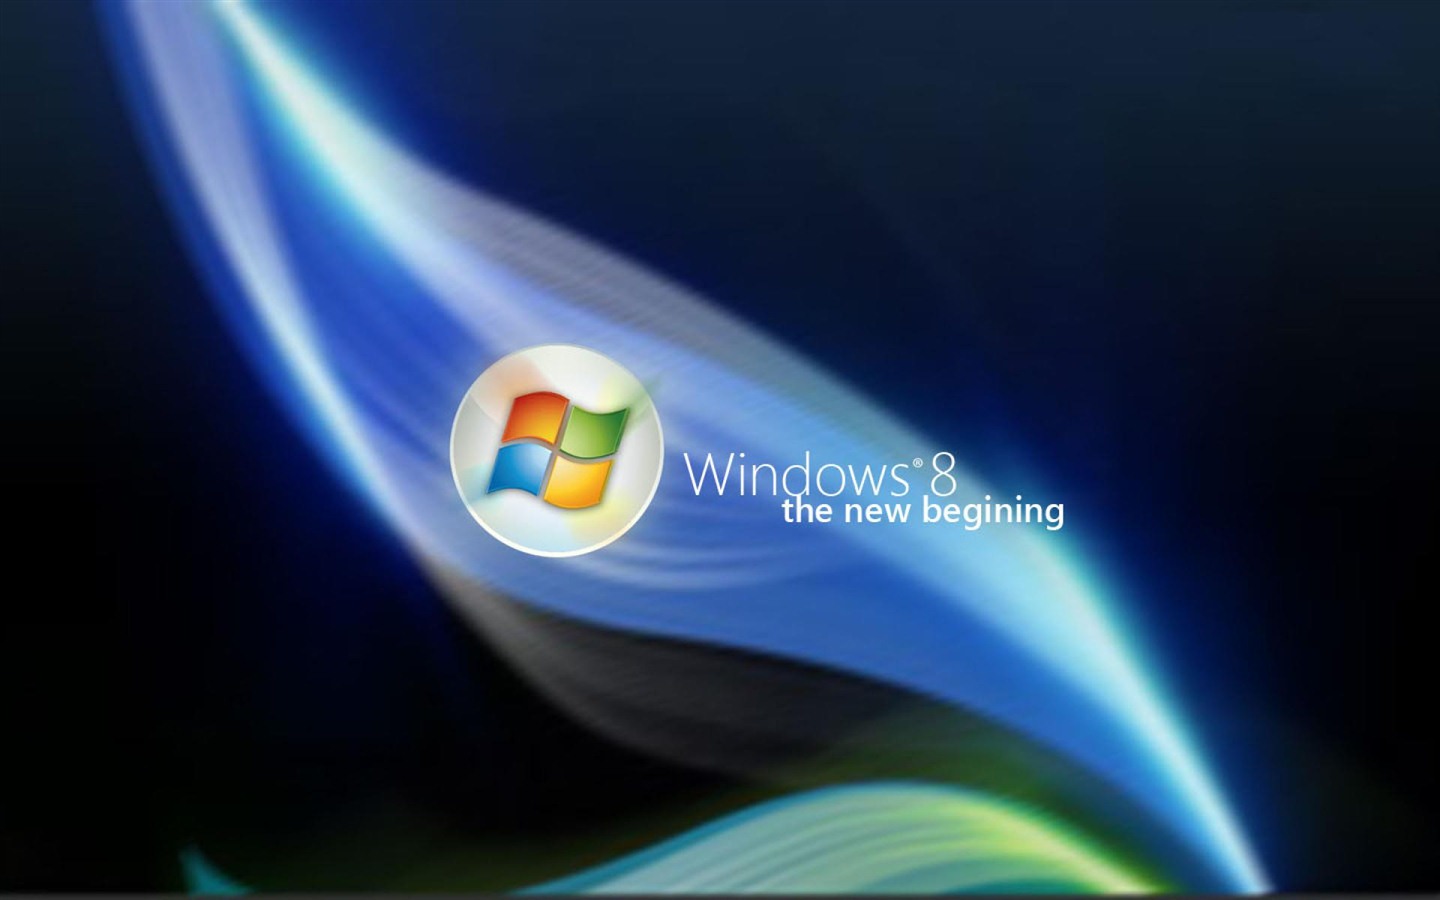 Windows 8 Theme Wallpaper (2) #10 - 1440x900